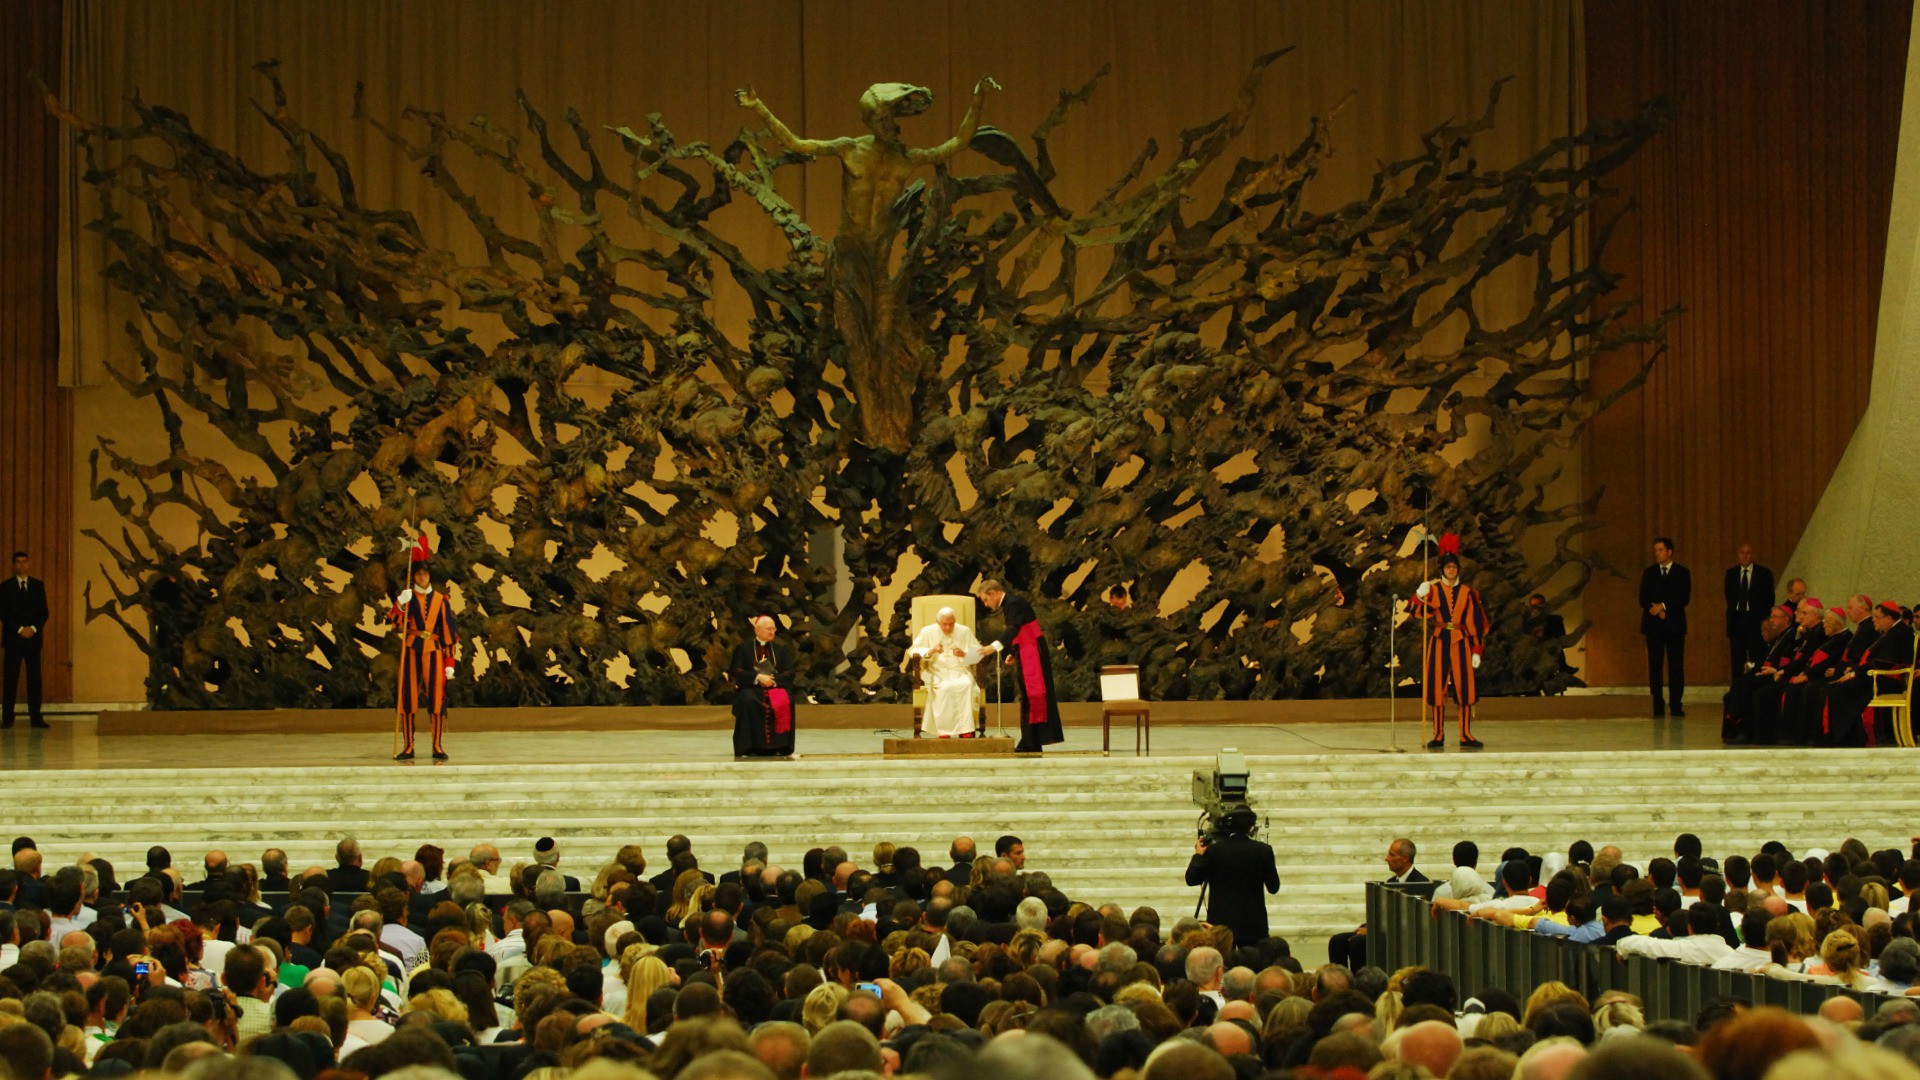 Audience papale dans la salle Paul VI (Photo:Bart Hanlon/Flickr/CC BY NC-ND 2.0)